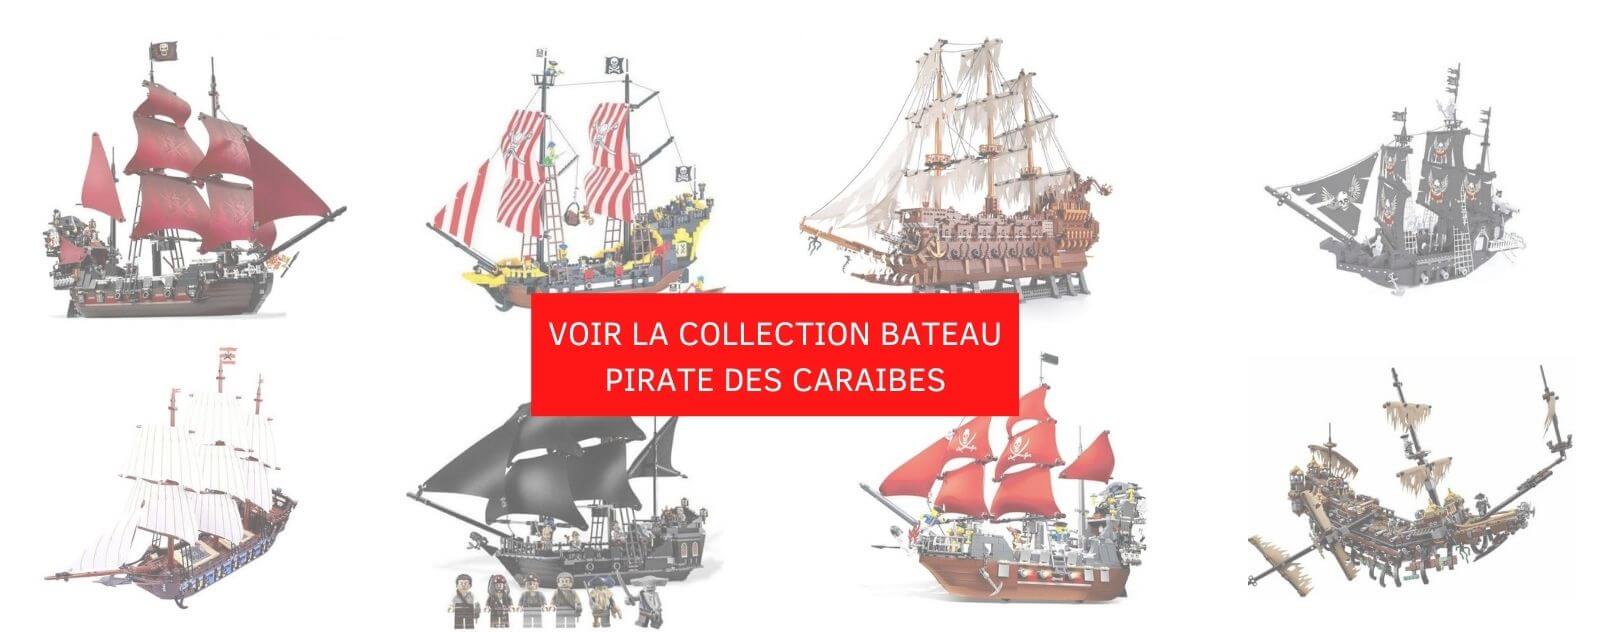 collection-bateau-pirate-des-caraibes